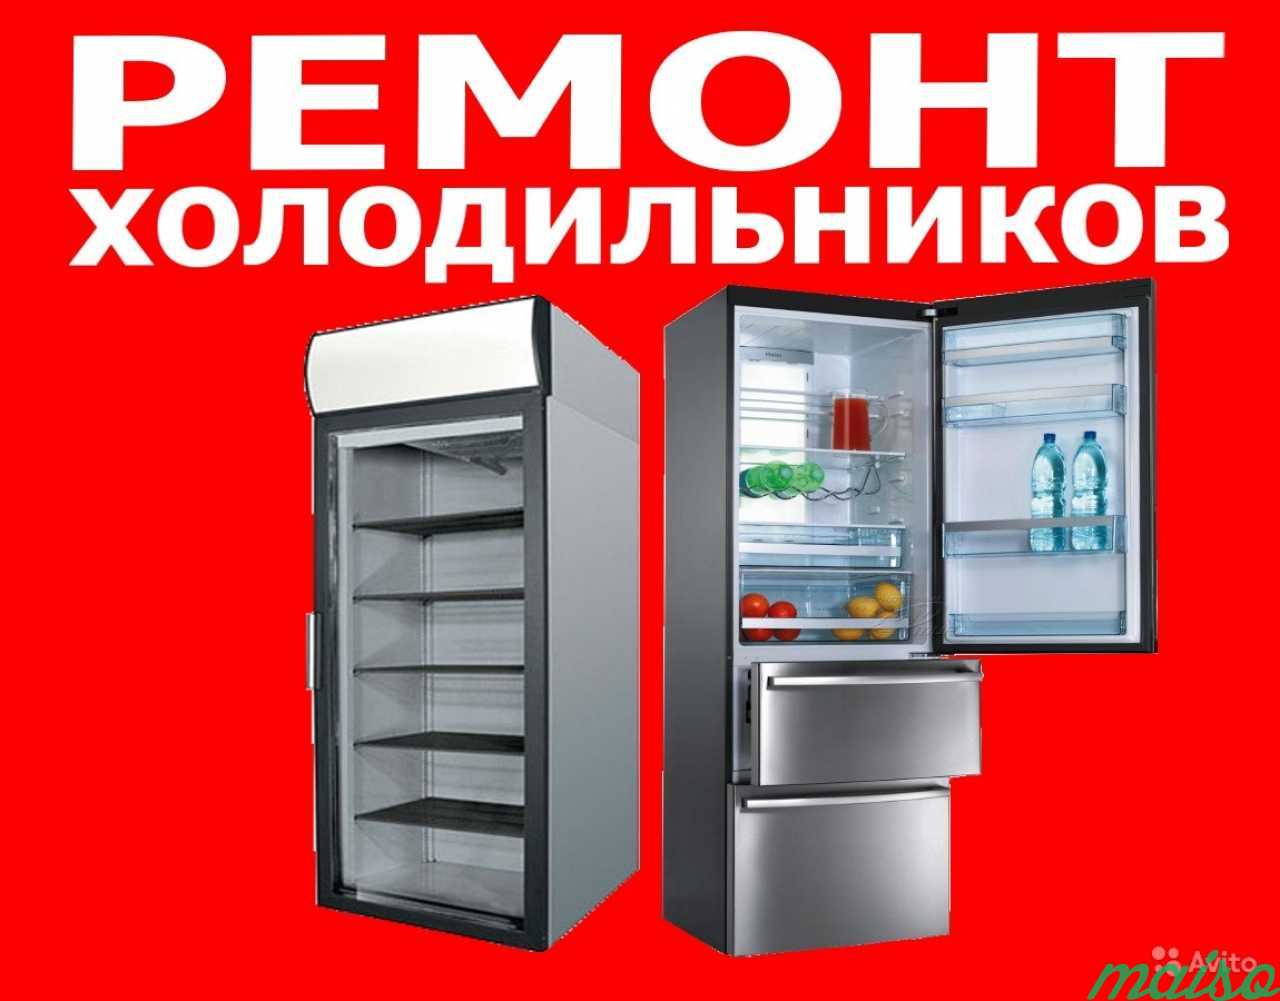 Ремонт холодильников в Санкт-Петербурге. Фото 1